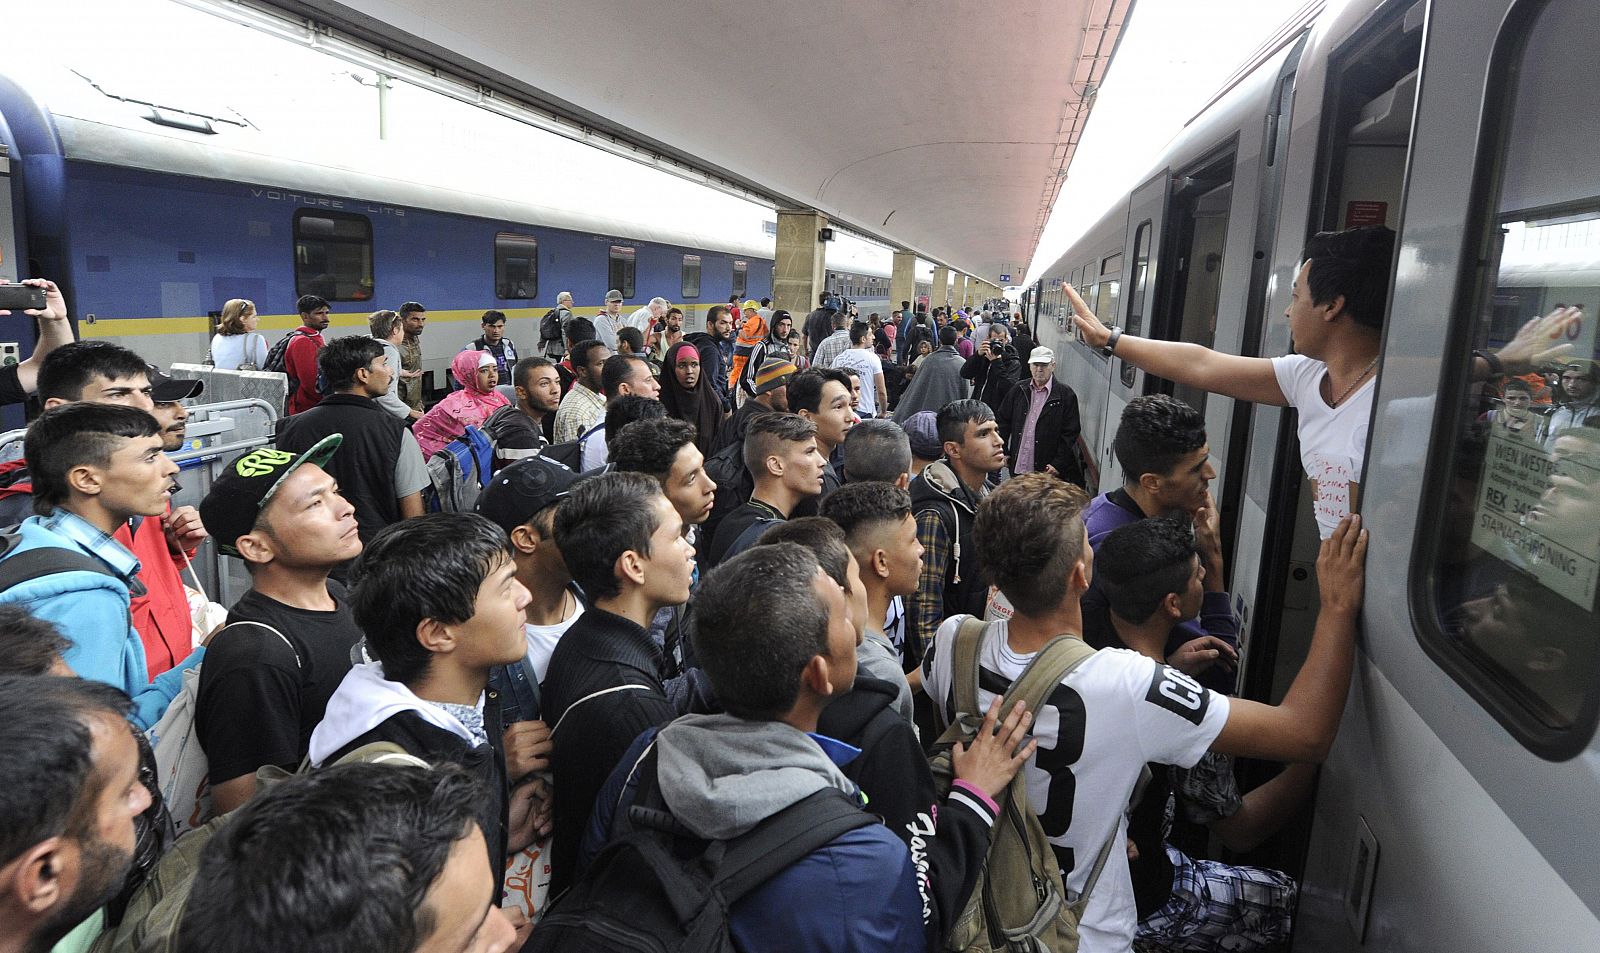 Refugiados en dirección a Alemania se agolpan en la estación vienesa de Westbound Railway (imagen de archivo)